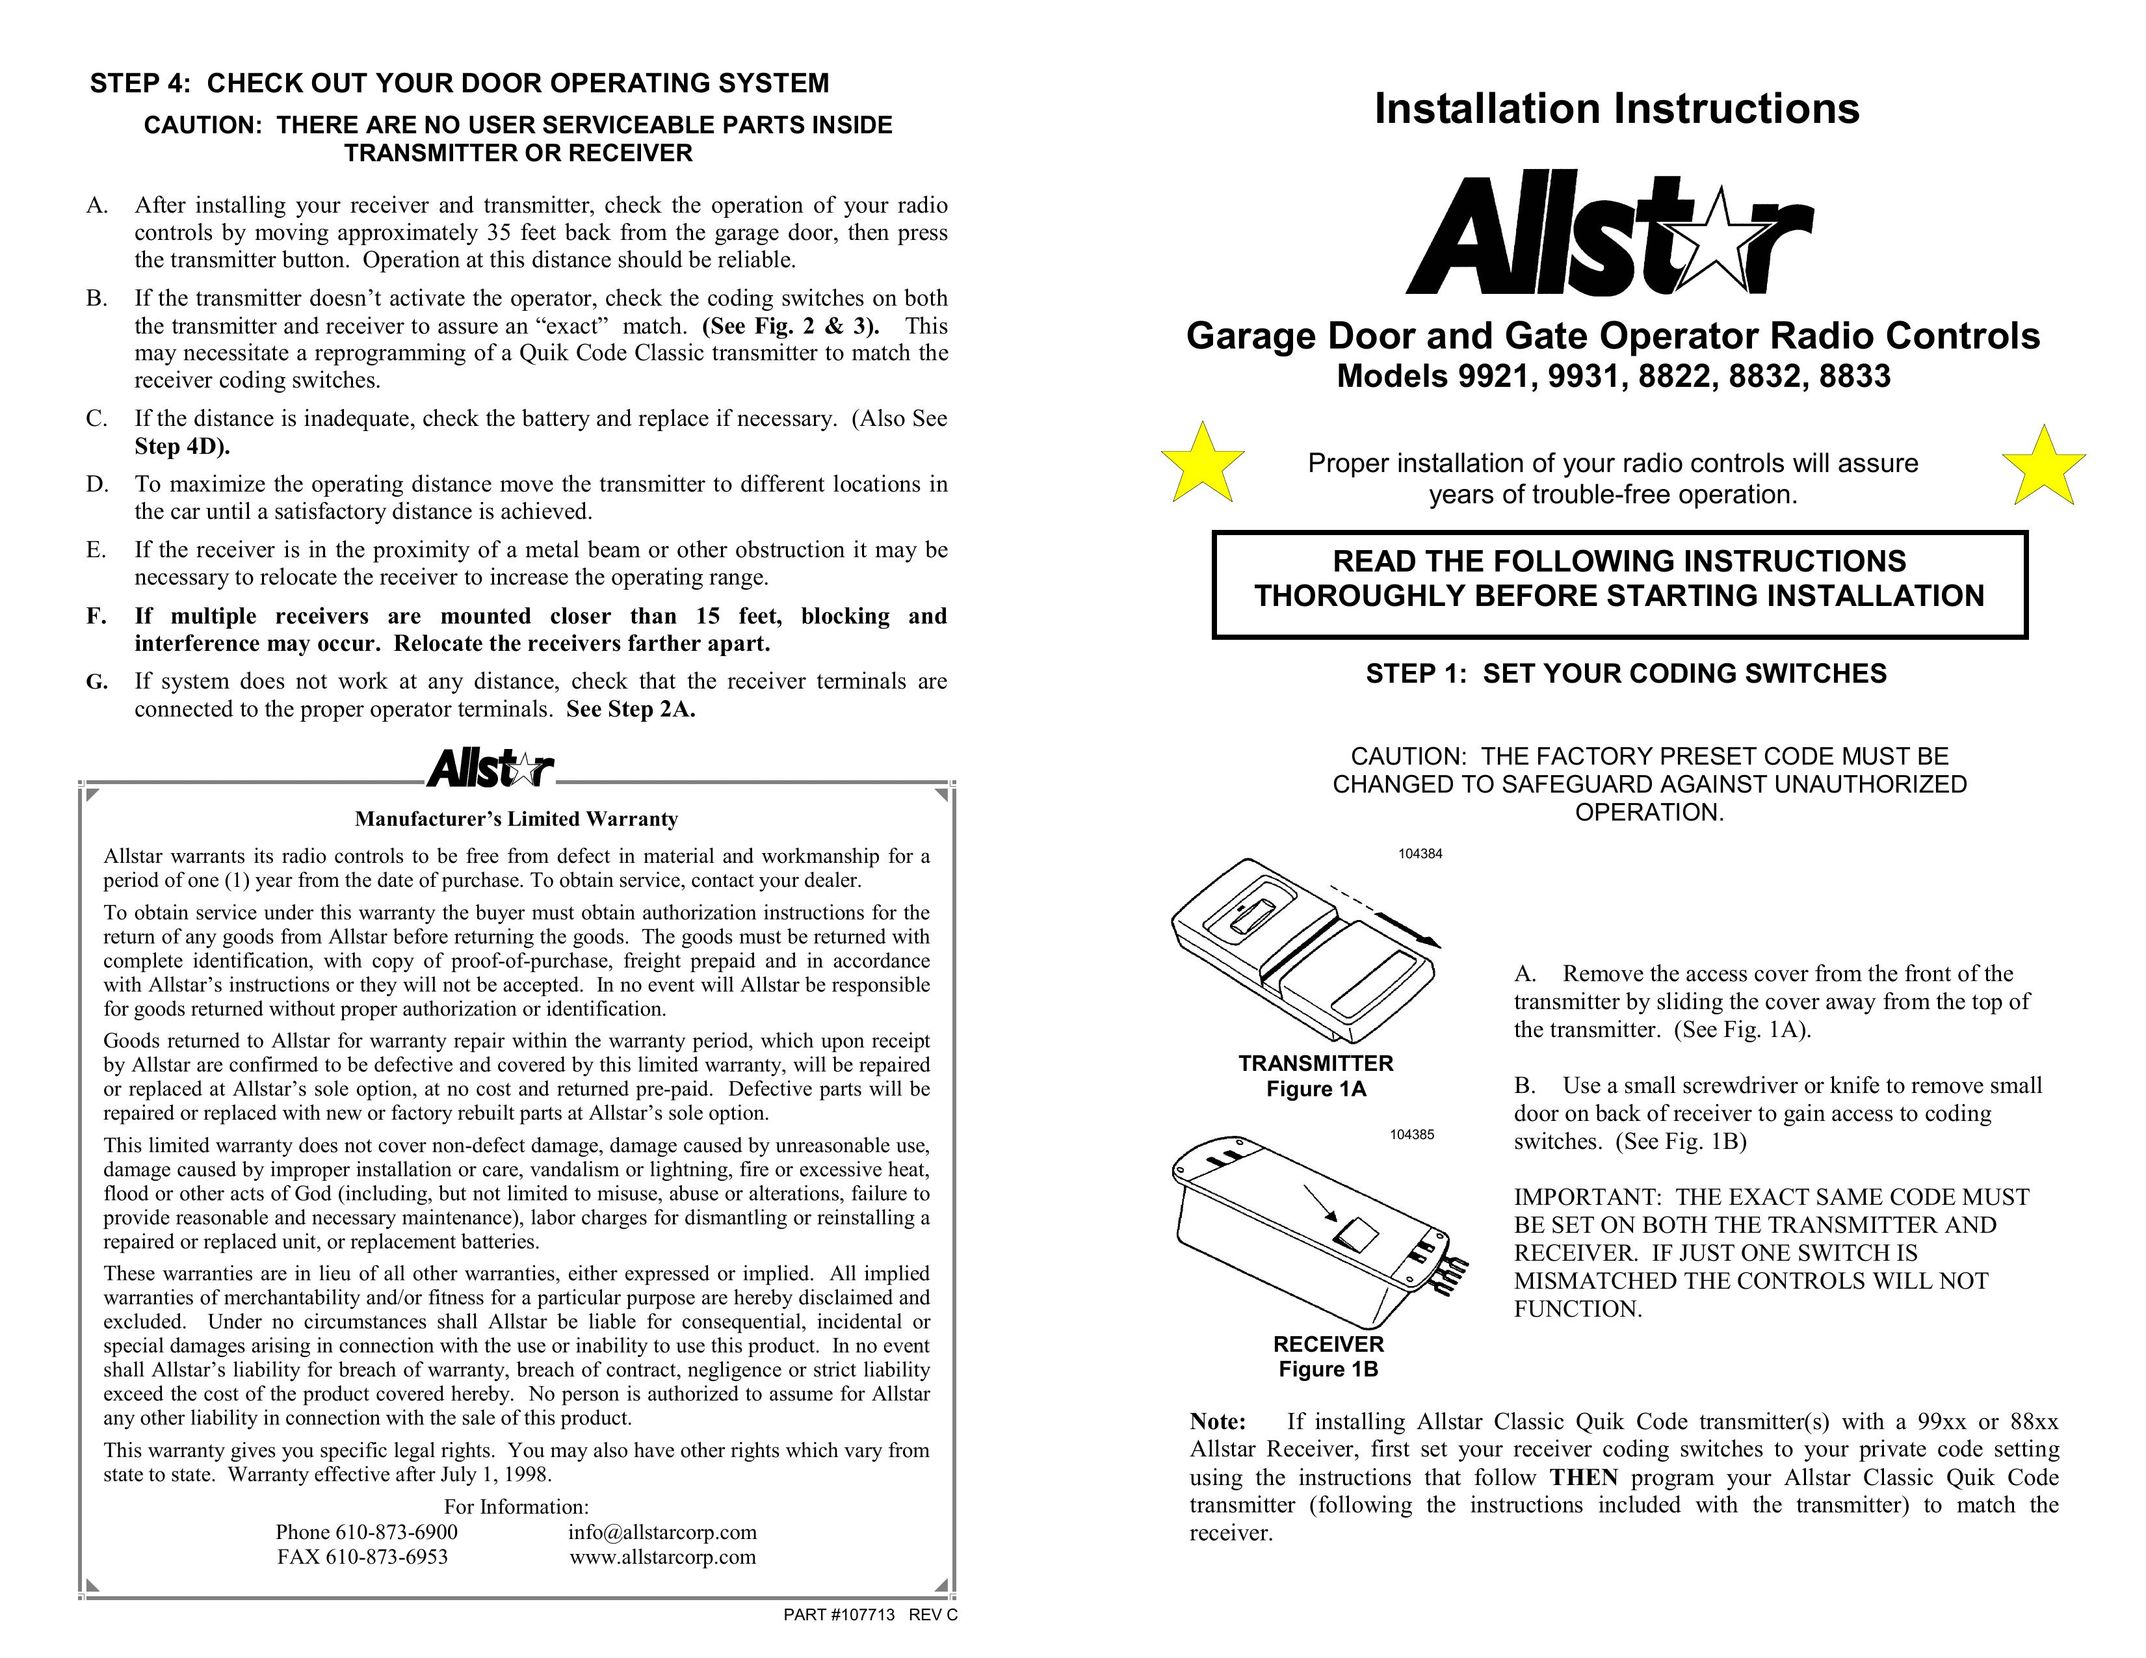 Allstar Products Group 8822 Garage Door Opener User Manual